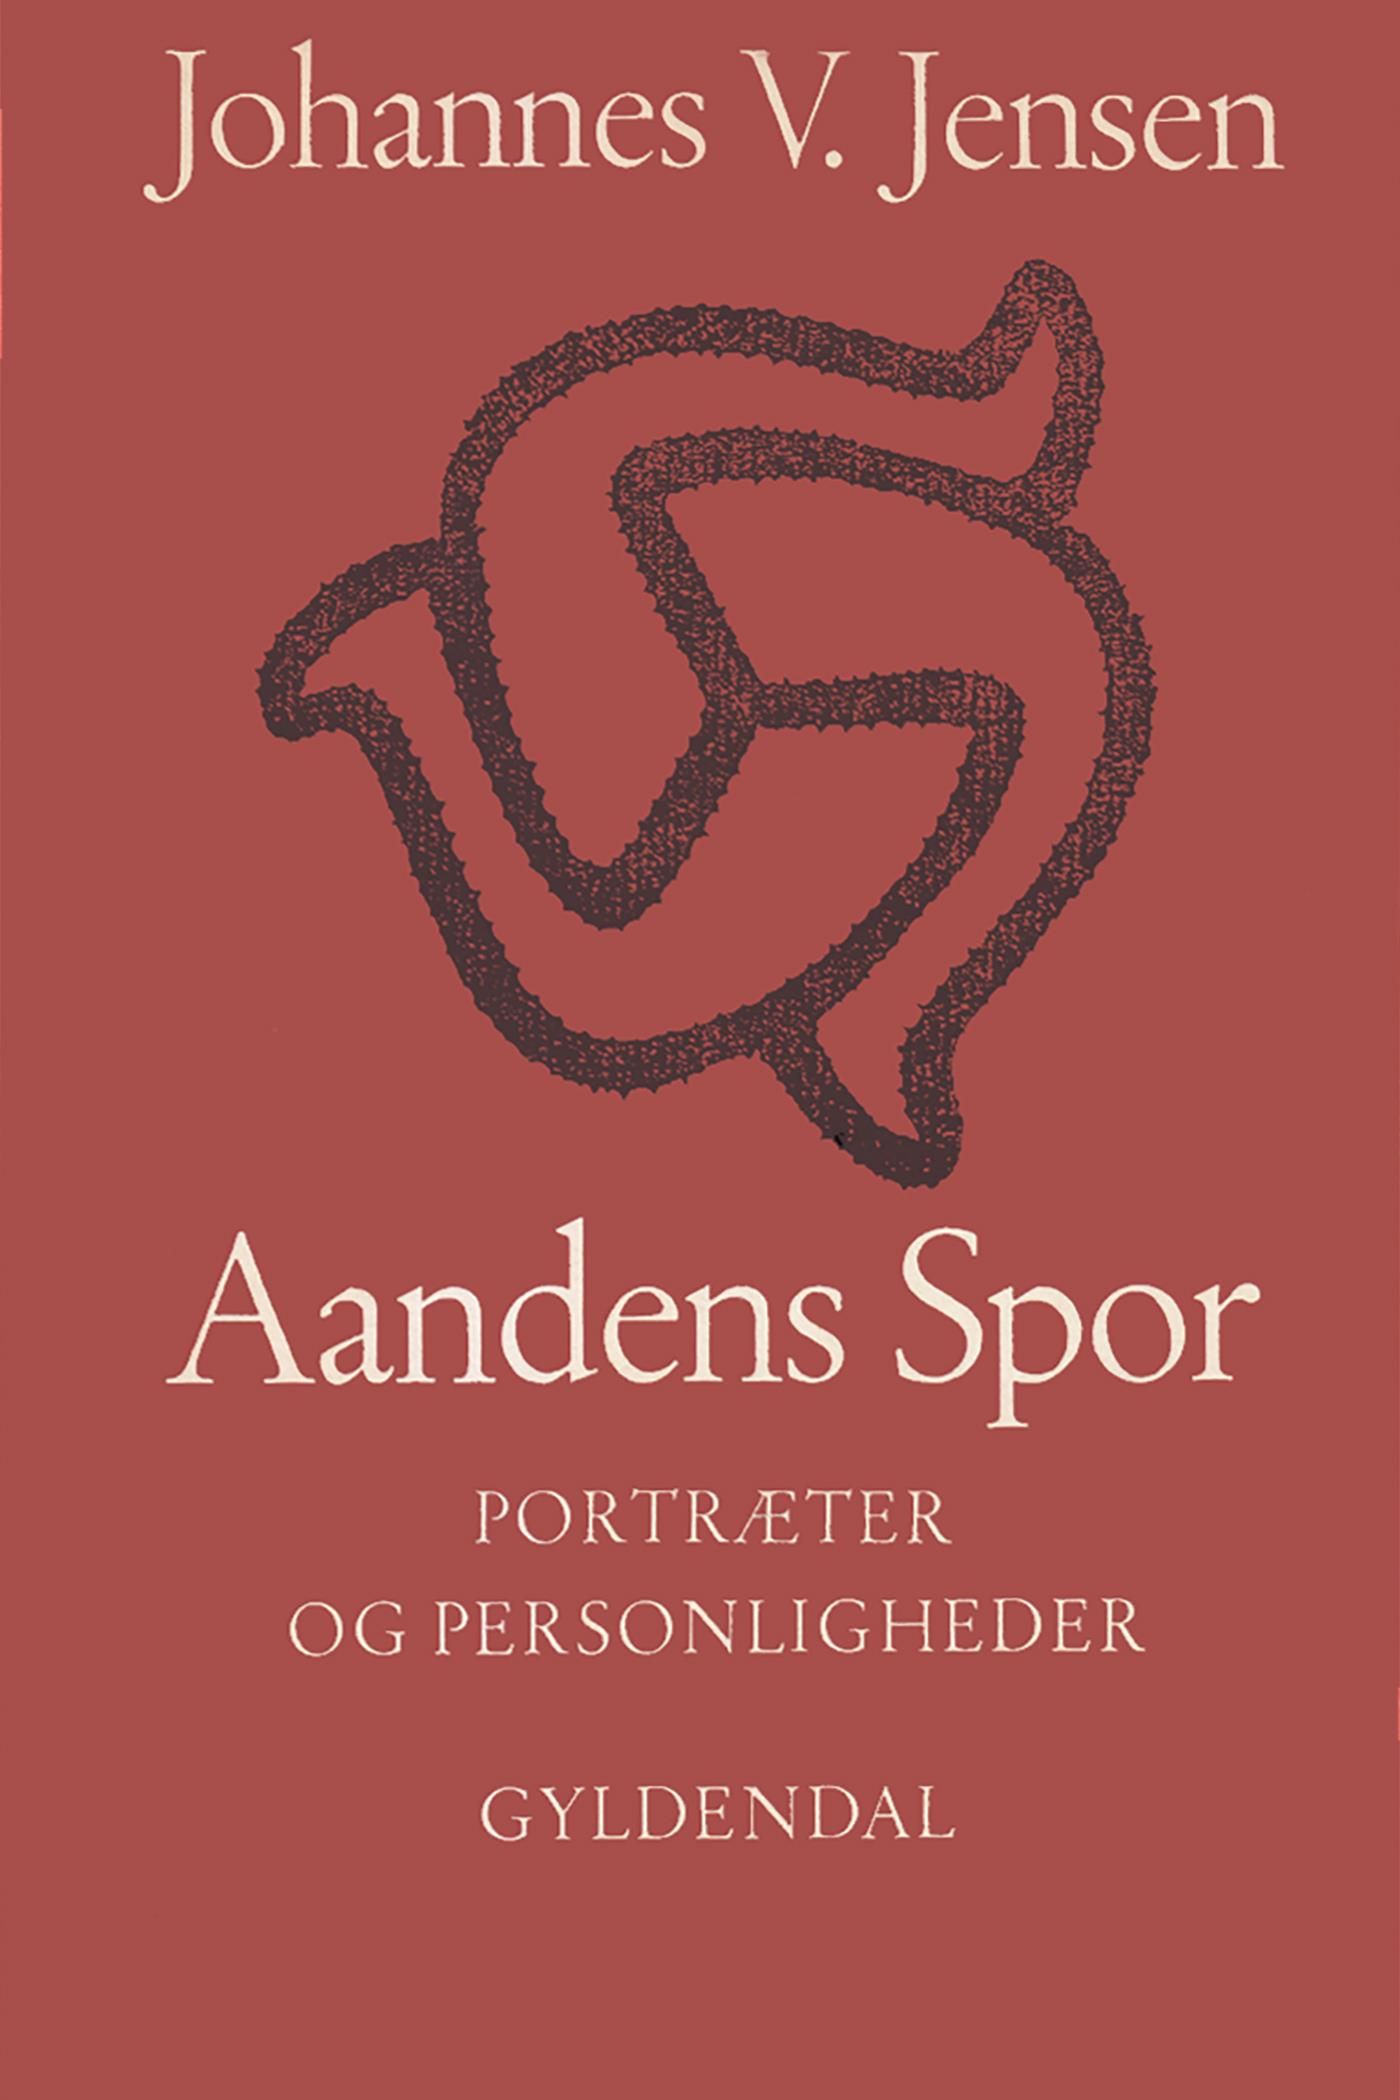 Aandens Spor, e-bok av Johannes V. Jensen